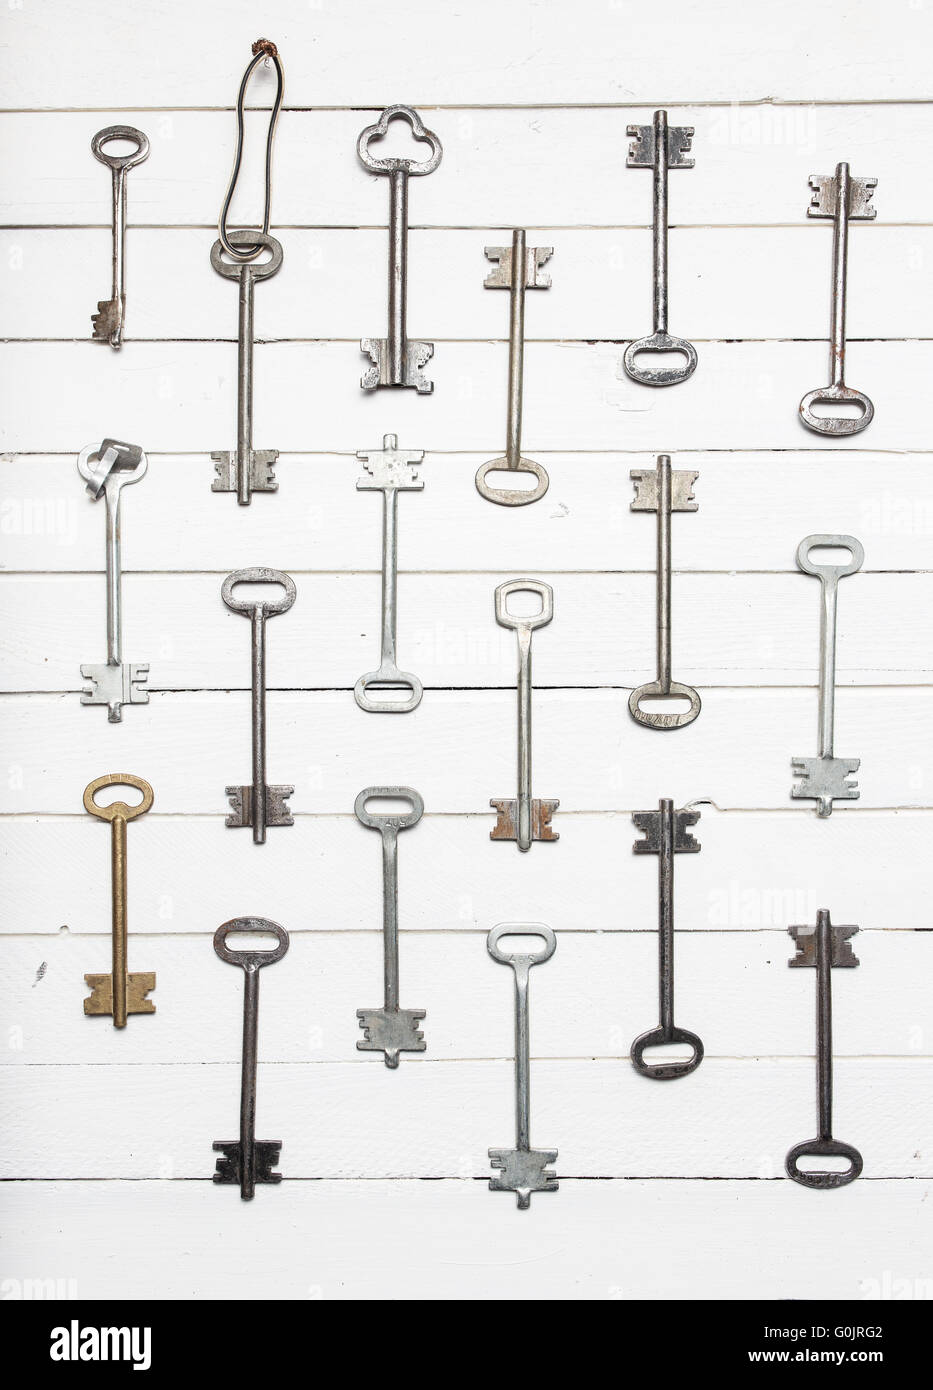 Certains porte clefs alignés sur la surface en bois ancien, de la sûreté et de la sécurité contexte concept Banque D'Images